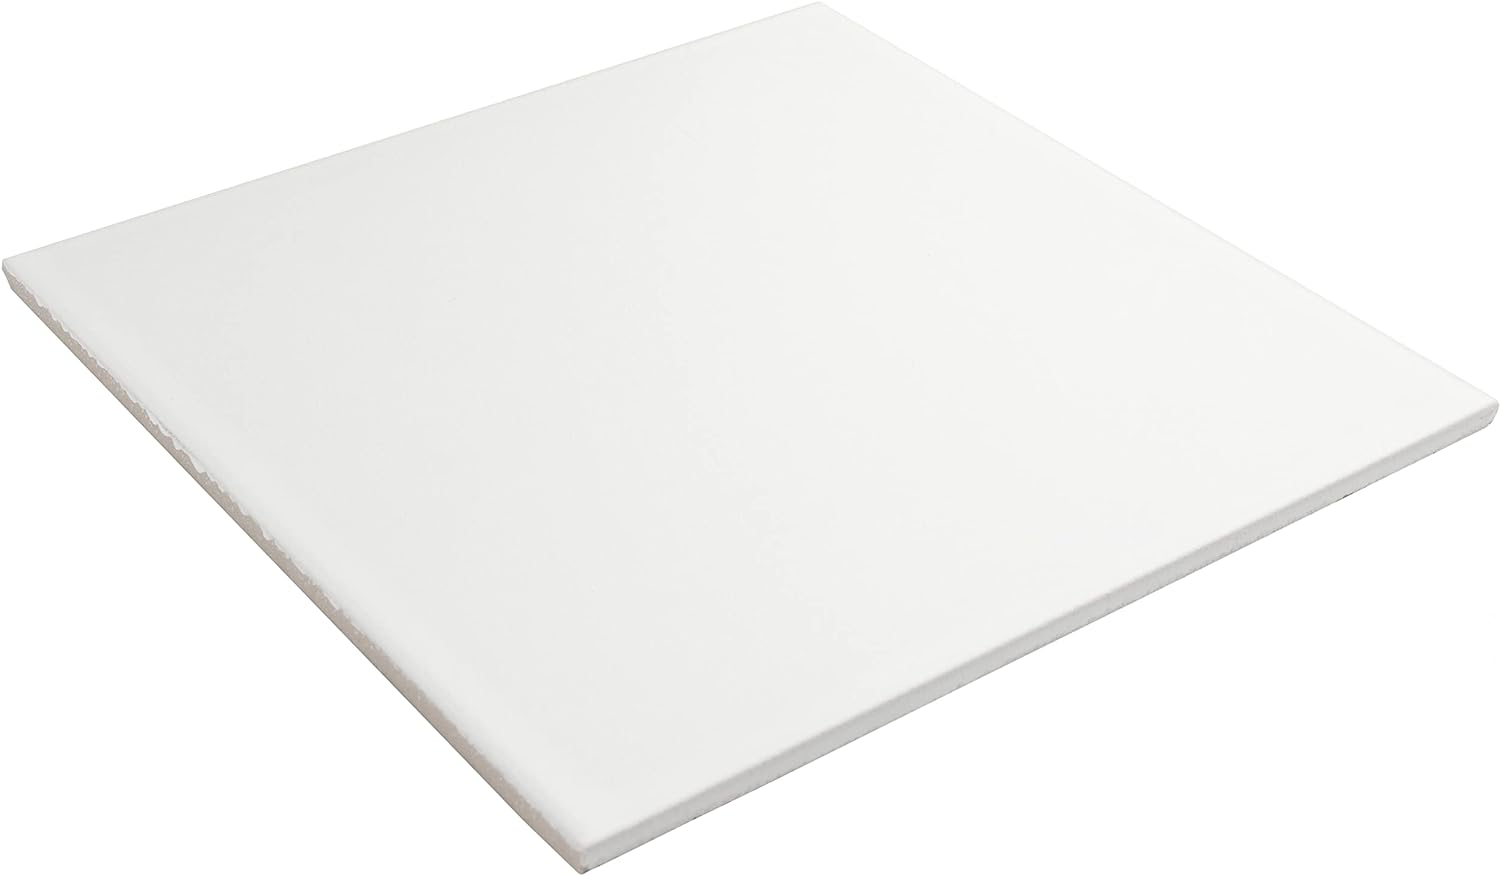 SOMERTILE FRC8REVW Revival White x 7-3/4" Ceramic Floor and Wall Tile, 25 Sq Ft